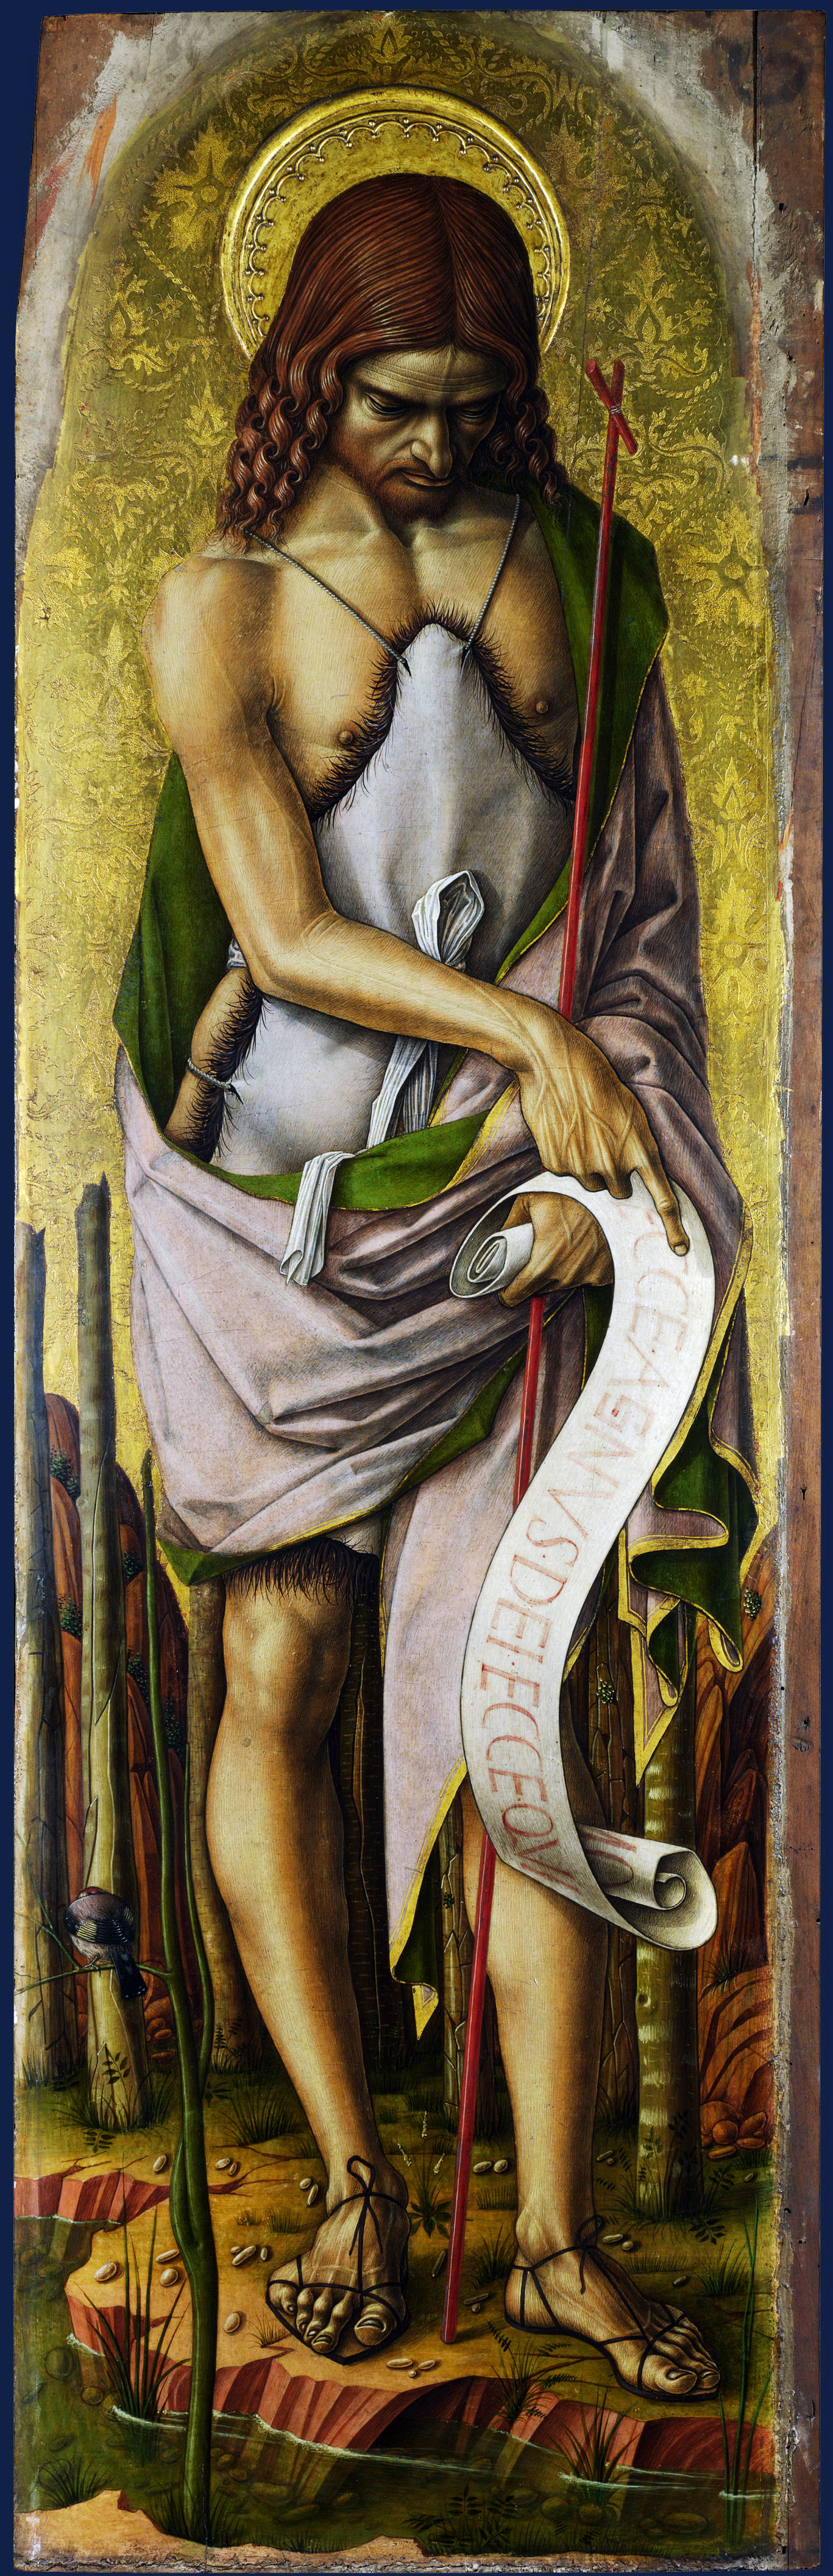 Карло Кривелли. Святой Иоанн Креститель. Центральный алтарь Сан Доменико в Асколи, полиптих, левая внешняя панель